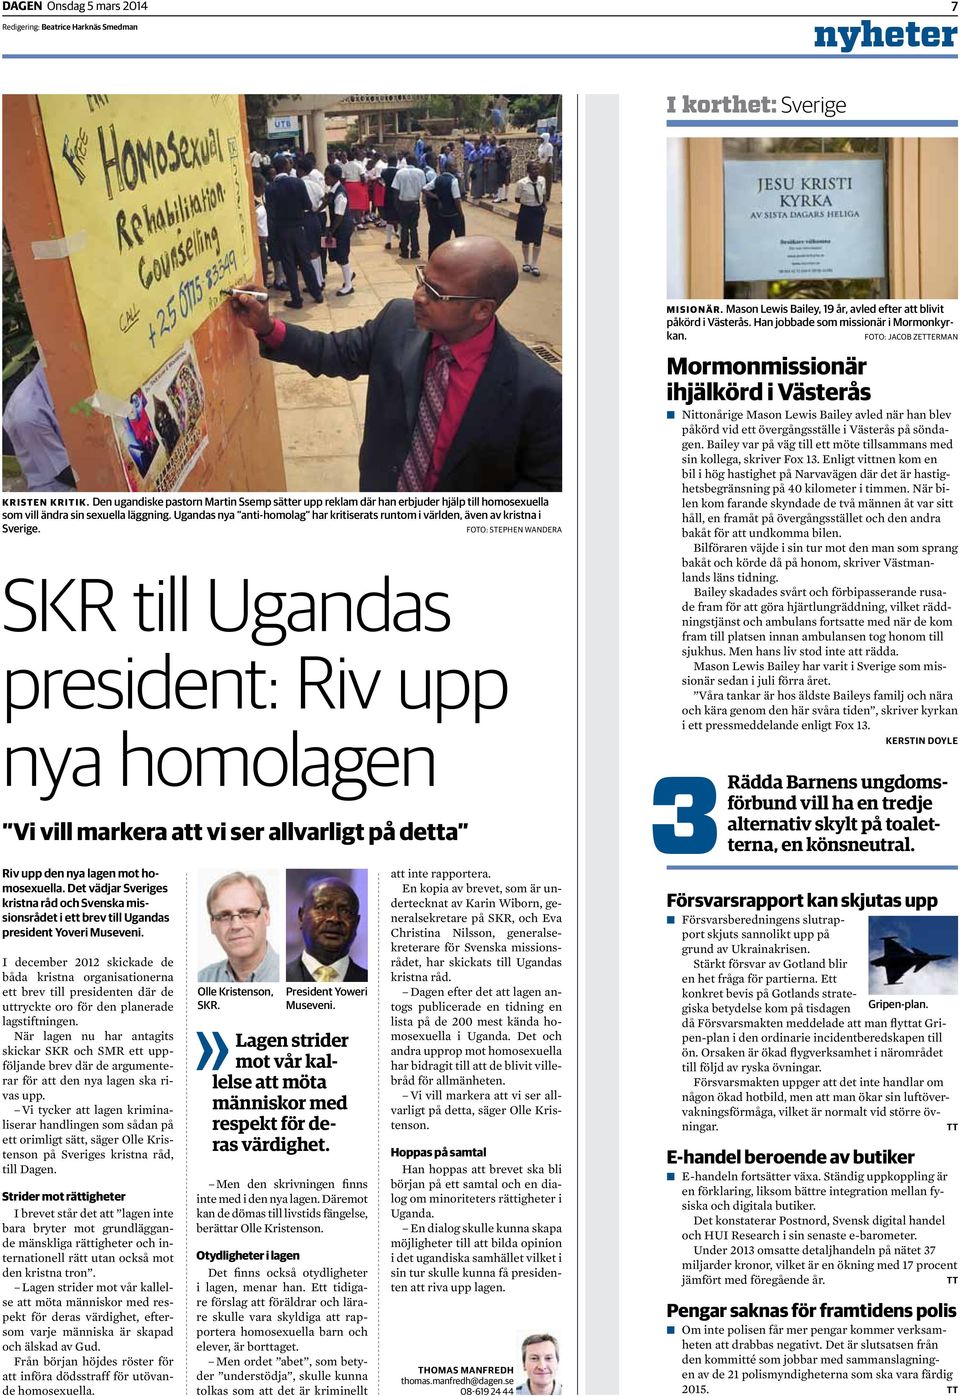 Ugandas nya anti-homolag har kritiserats runtom i världen, även av kristna i Sverige.